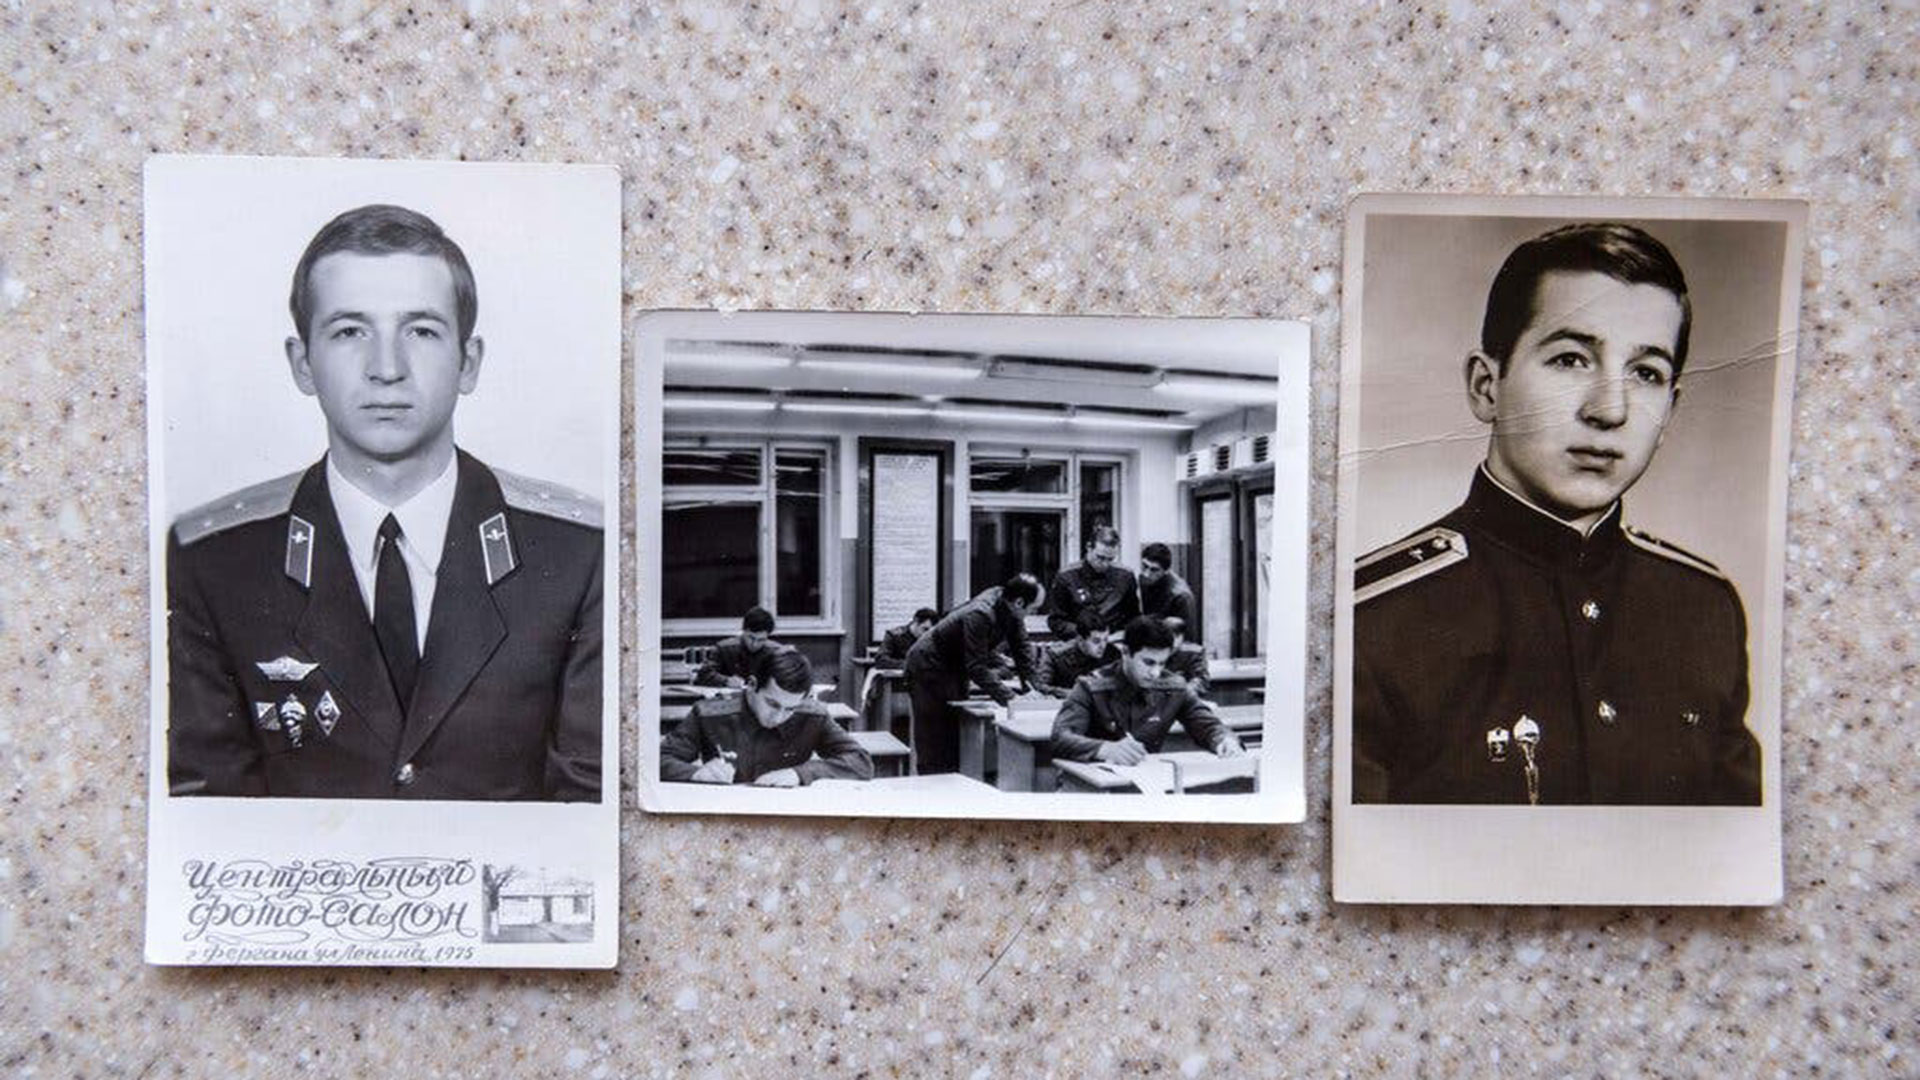 Fotografías de Sergei V. Skripal, ex coronel del servicio de inteligencia militar de Rusia condenado en 2006 por vender secretos a la inteligencia británica. Crédito Sergey Ponomarev para The New York Times